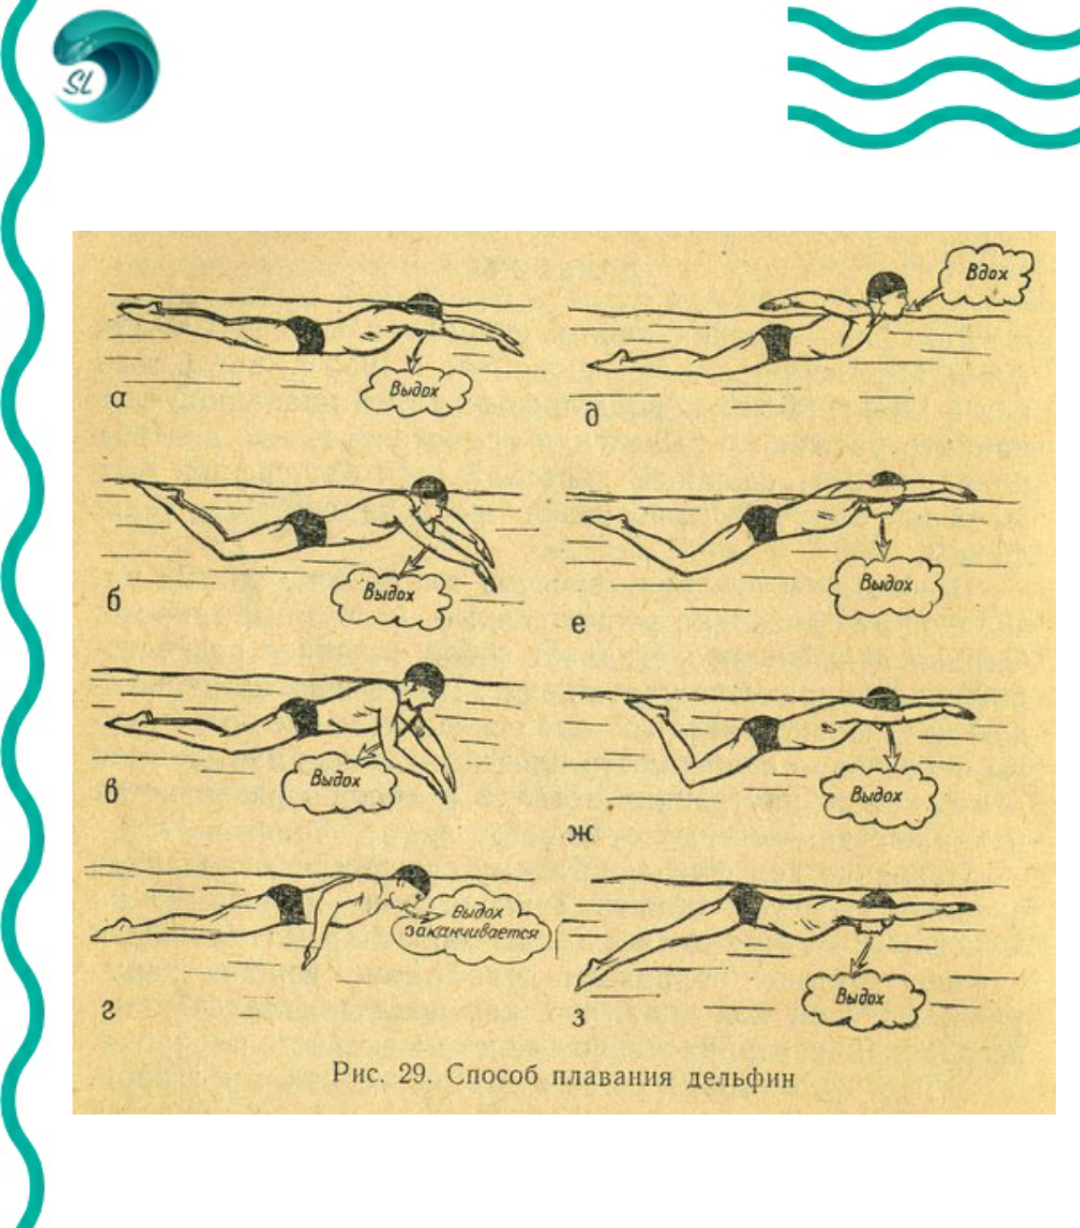 Обзор популярных стилей плавания в бассейне, их отличия и особенности